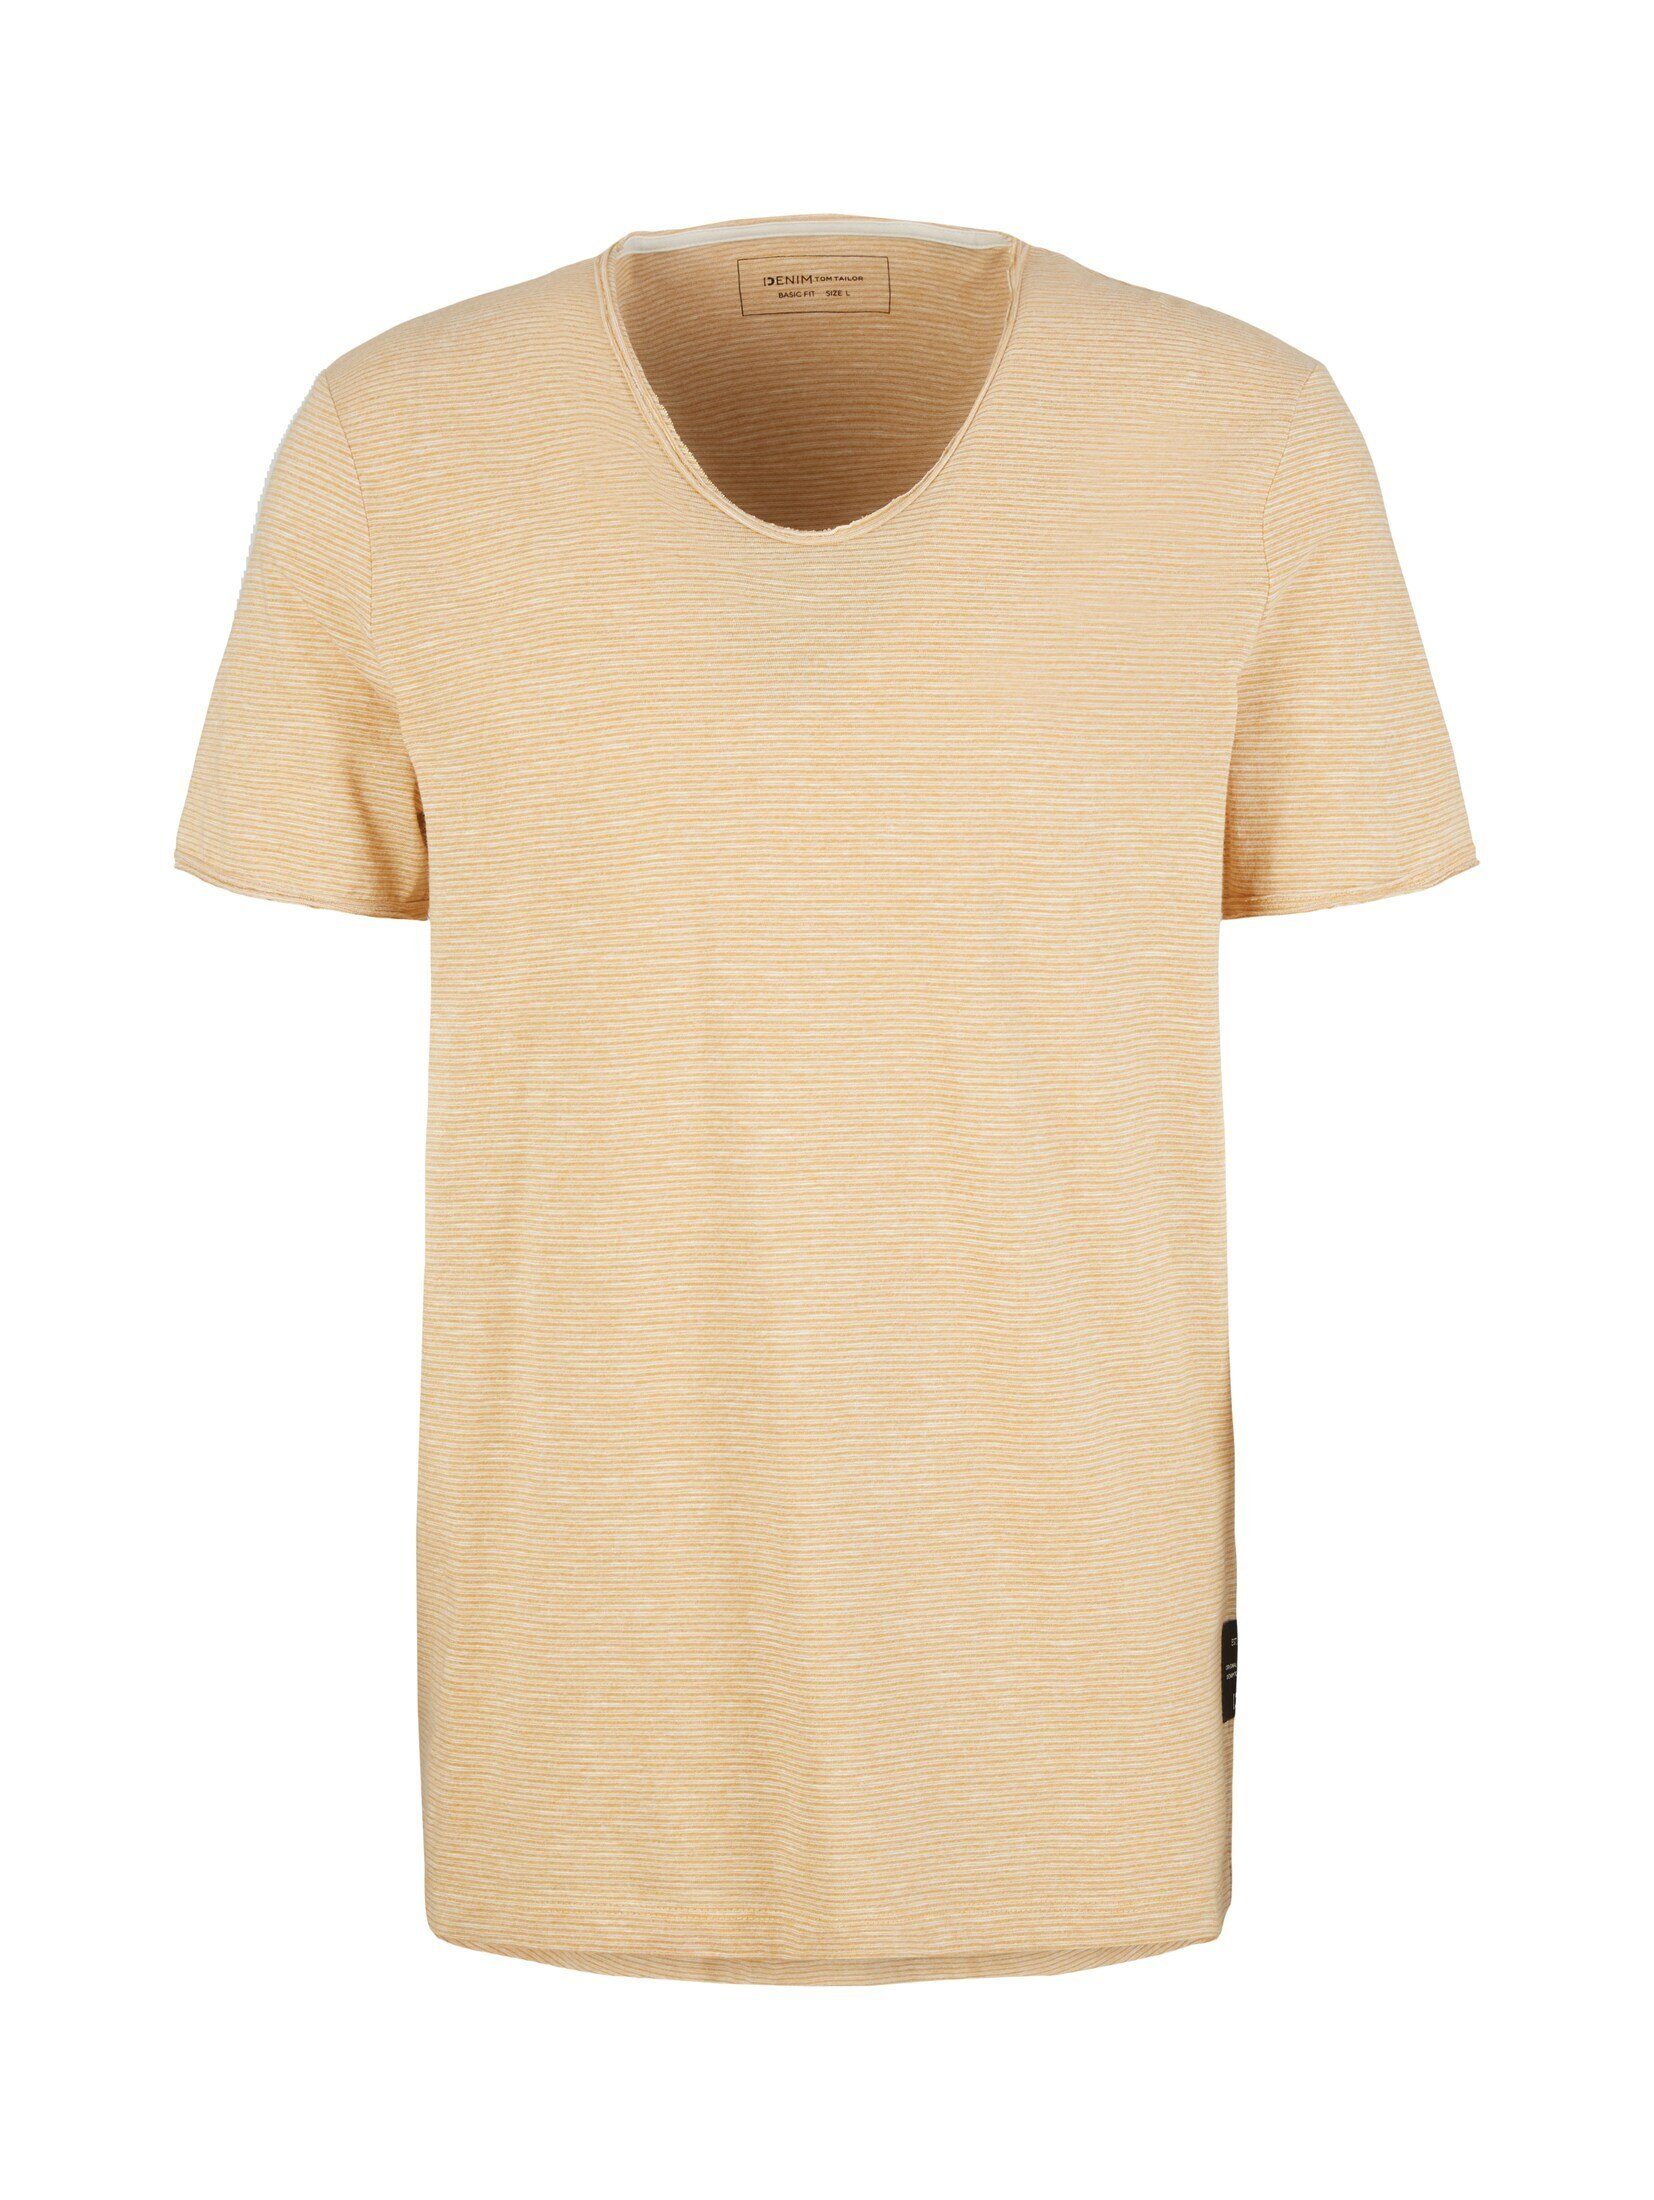 TOM TAILOR Denim T-Shirt T-Shirt Gestreiftes brown white yd fine stripe